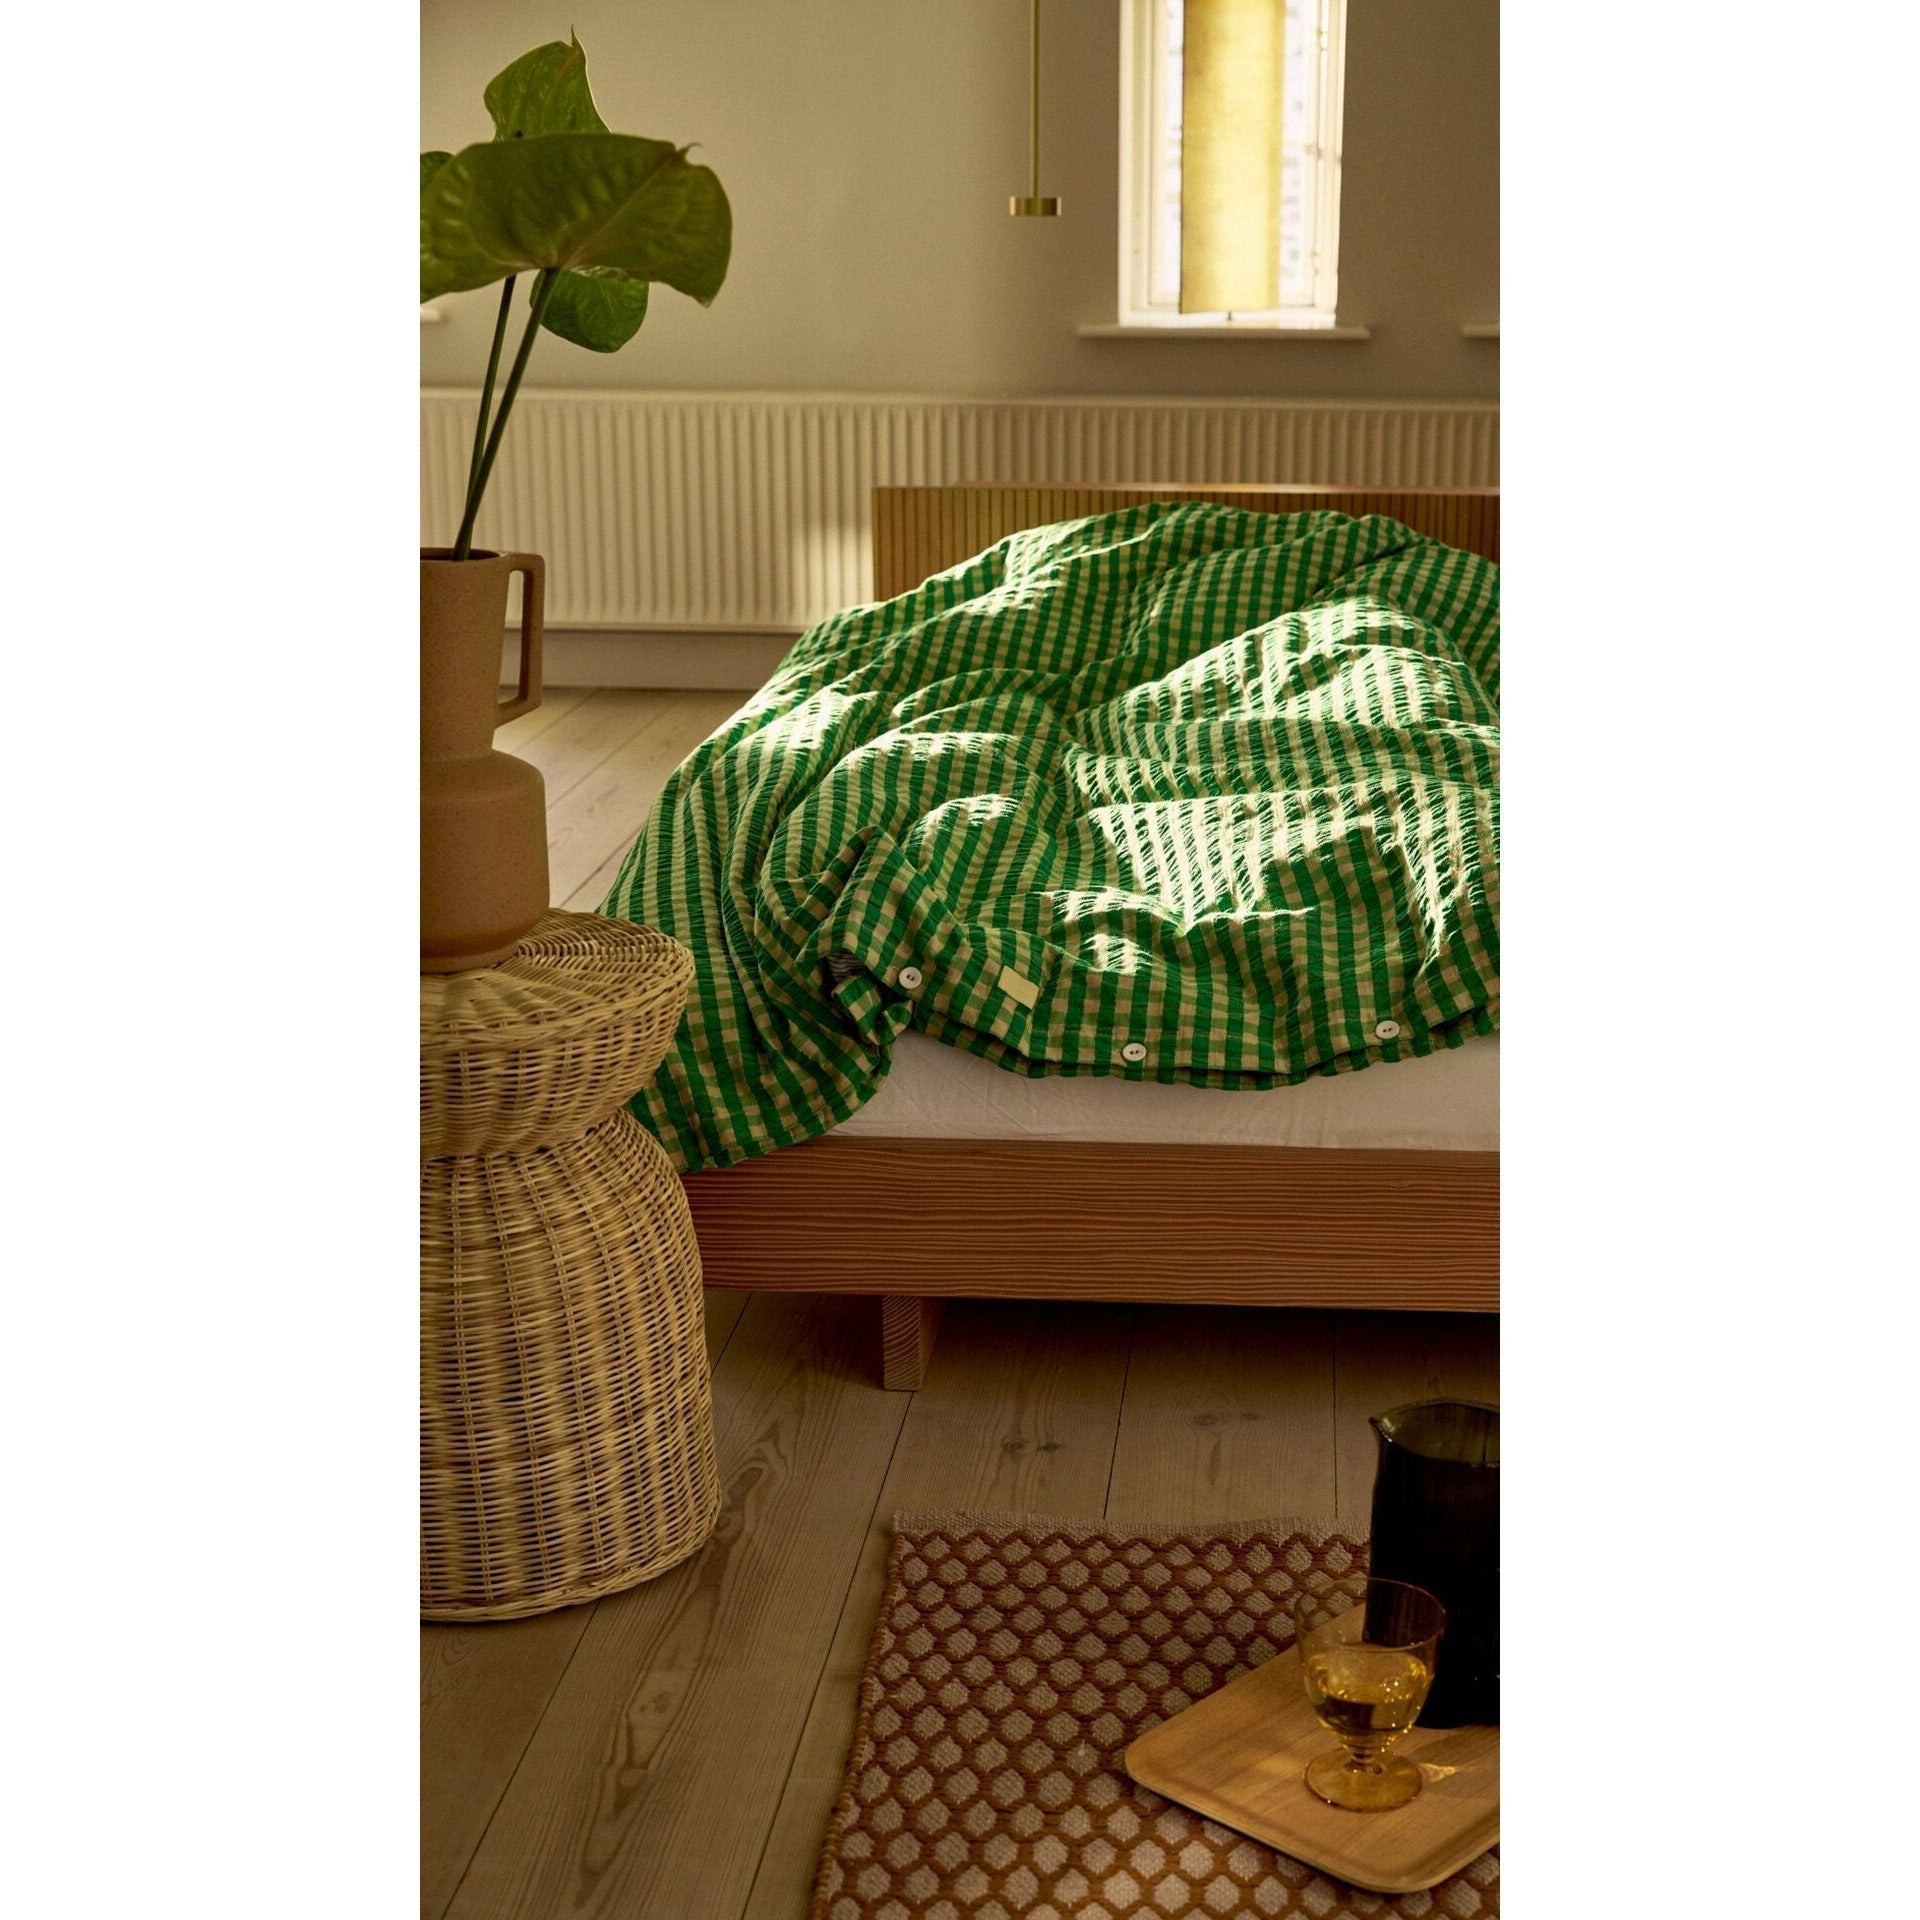 Juna Bræk & bølge lin lin 140x200 cm, vert / sable